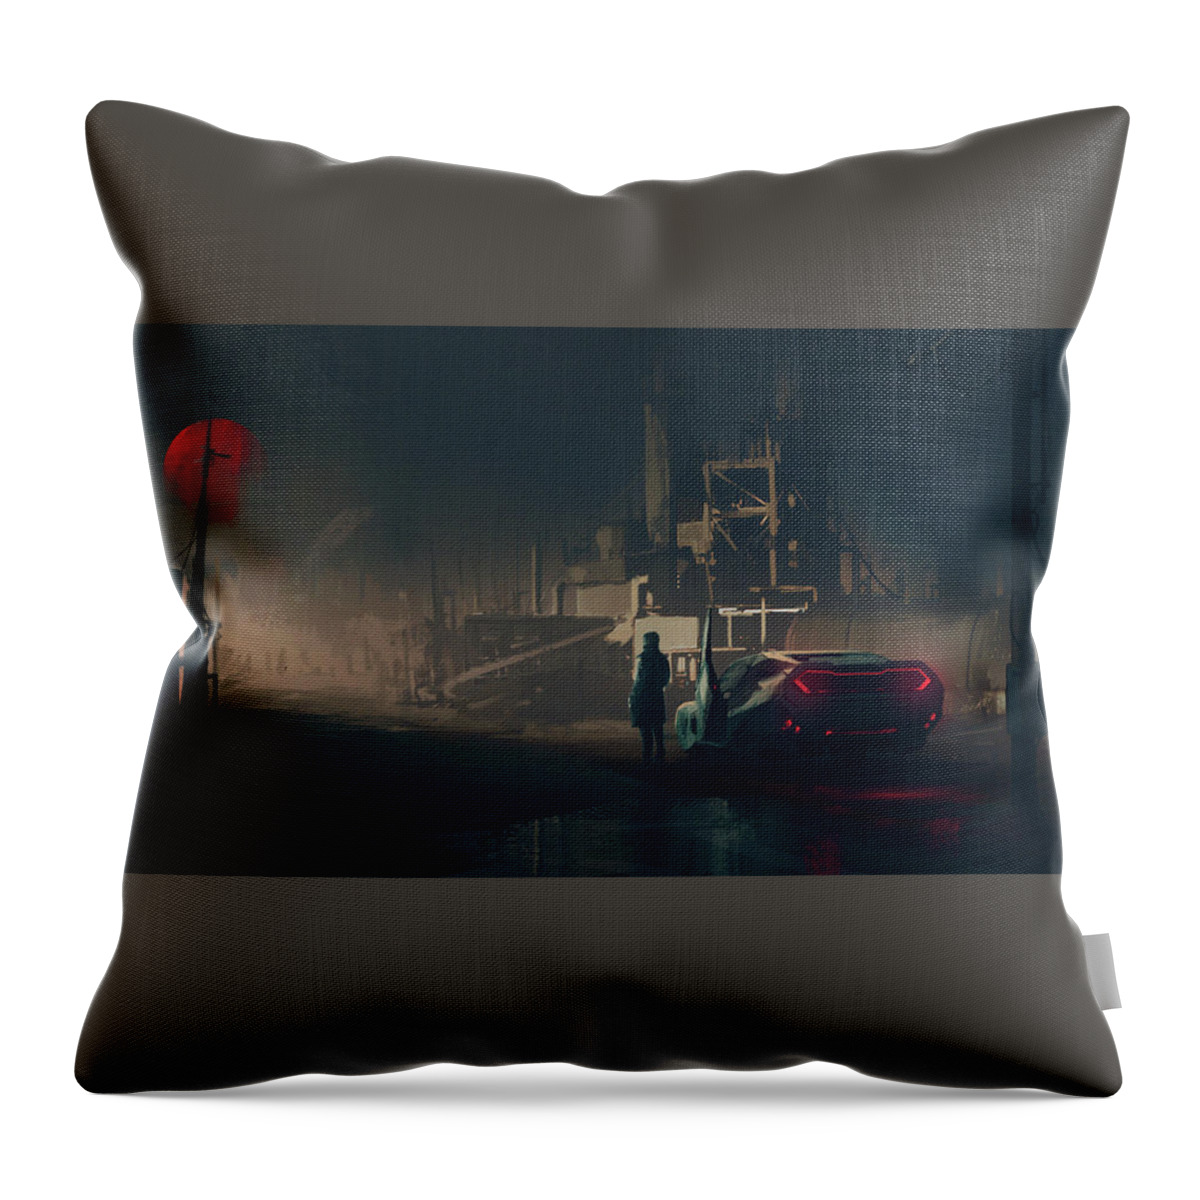 Blade Runner 2049 Throw Pillow featuring the digital art Blade Runner 2049 by Maye Loeser